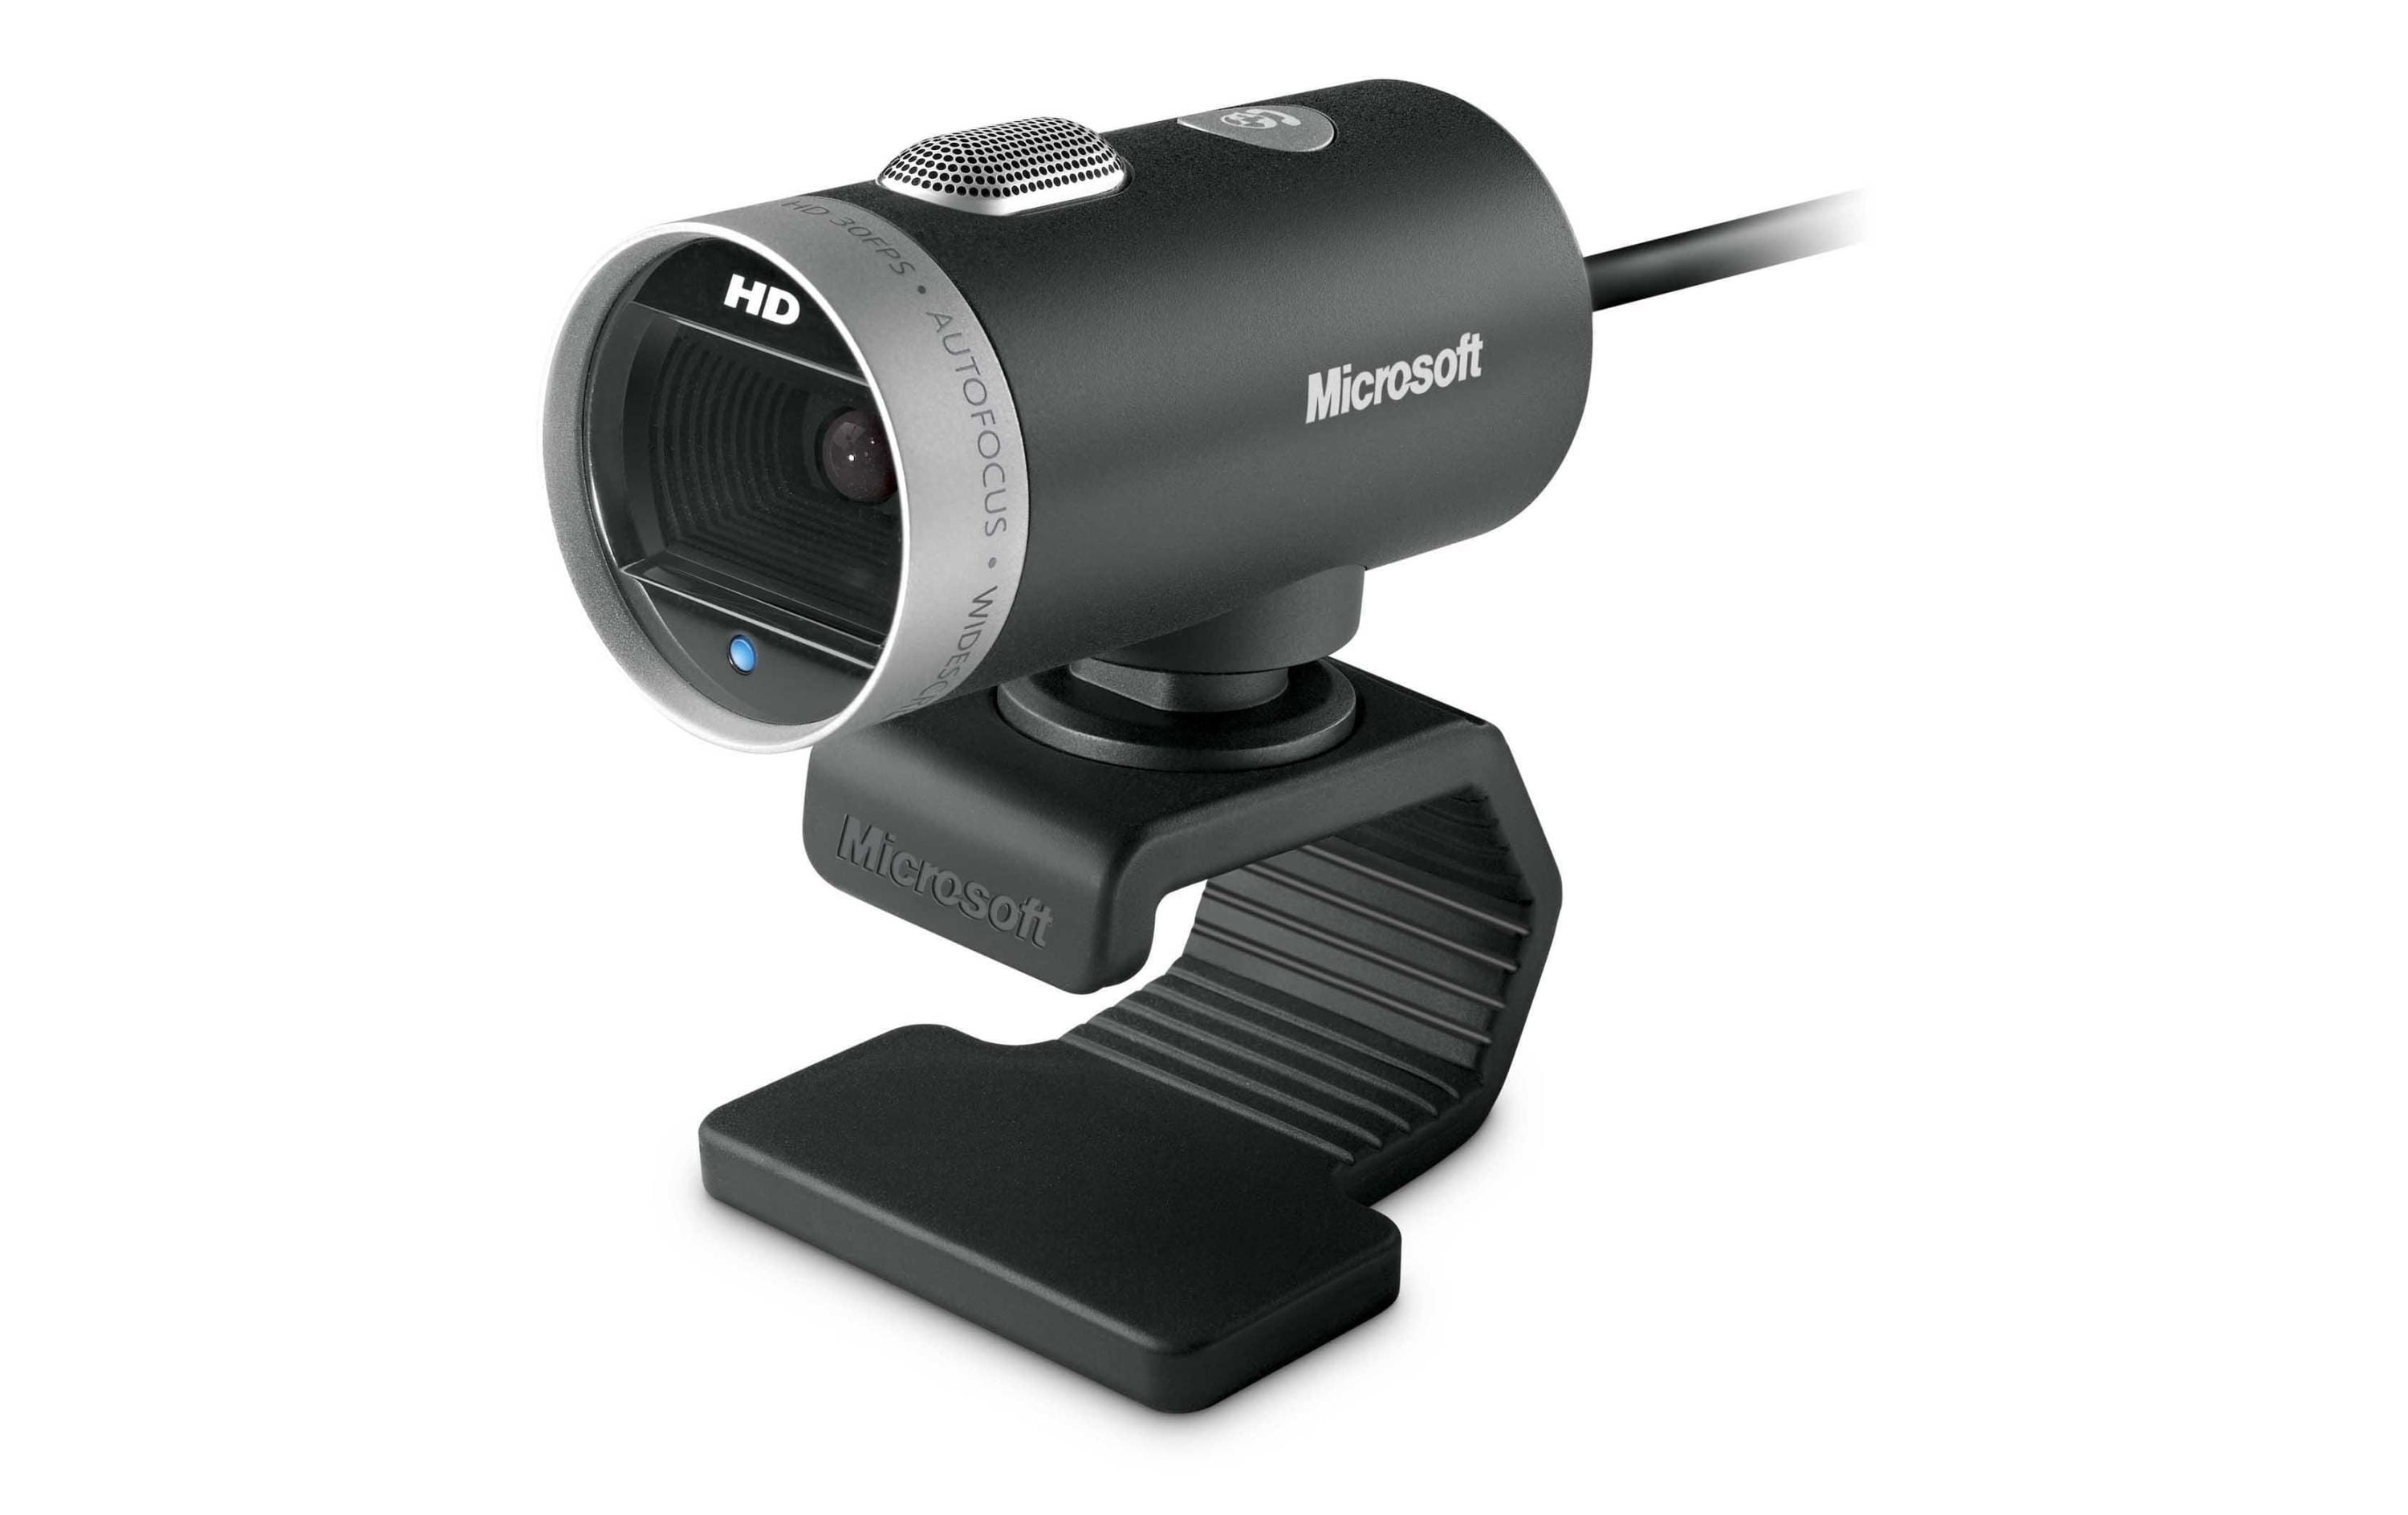 Microsoft Webcam LifeCam Cinema Business